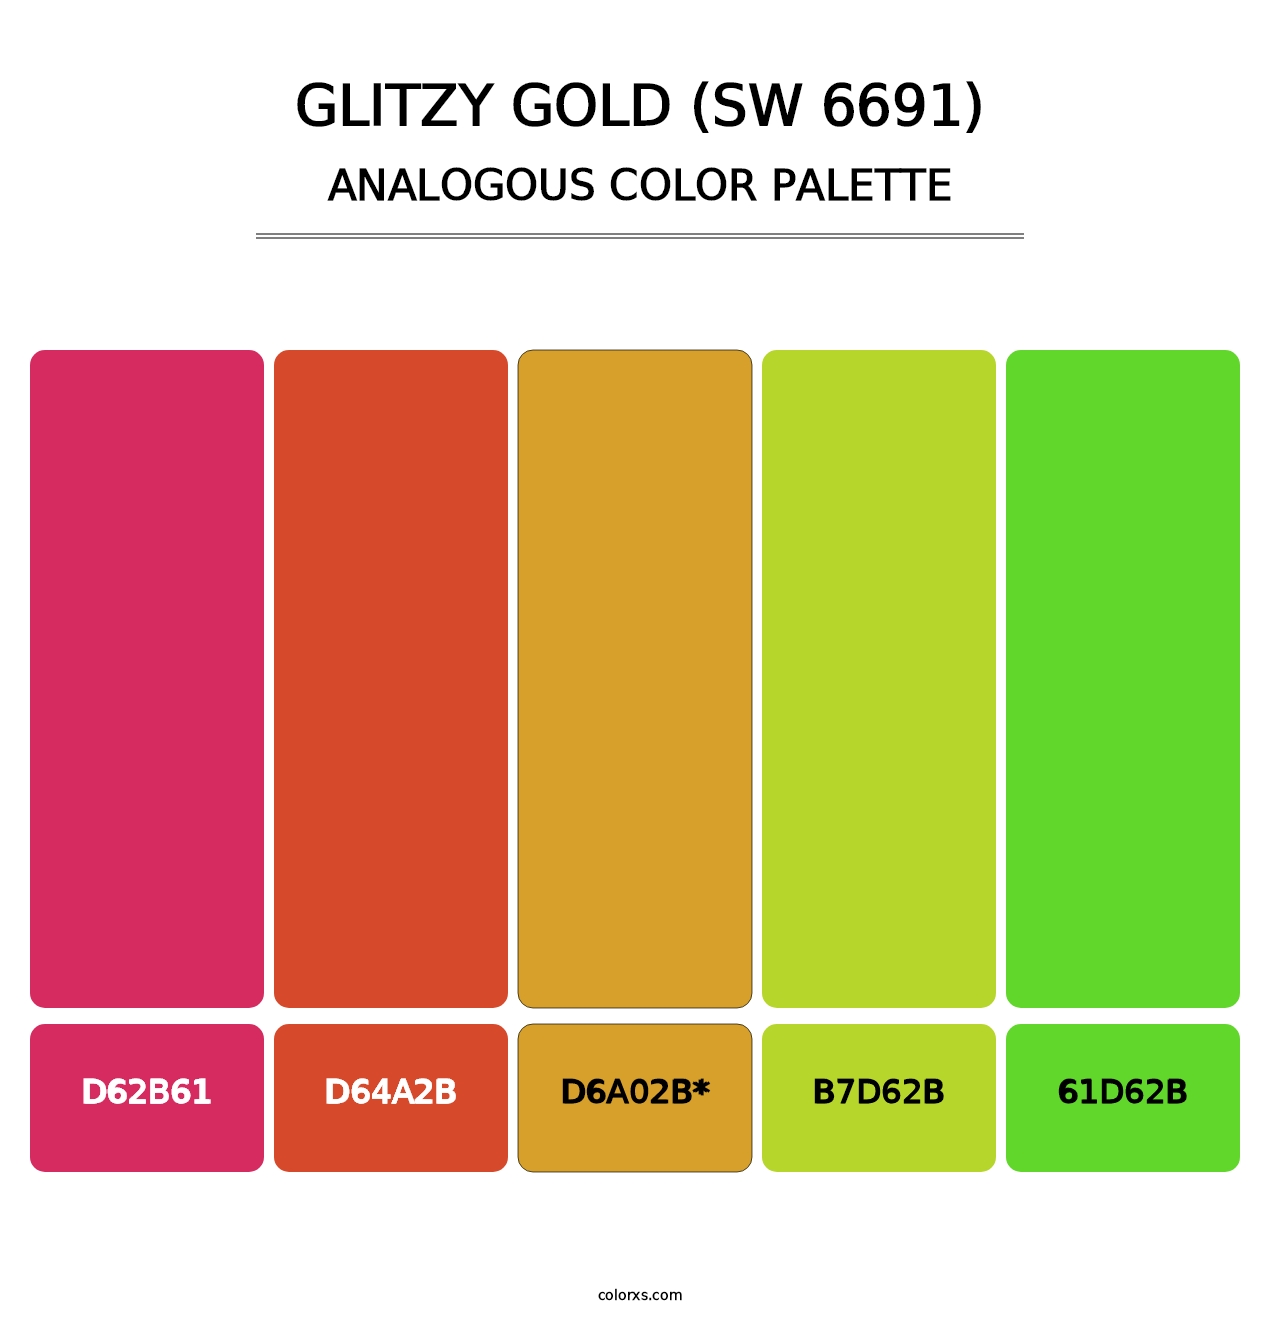 Glitzy Gold (SW 6691) - Analogous Color Palette